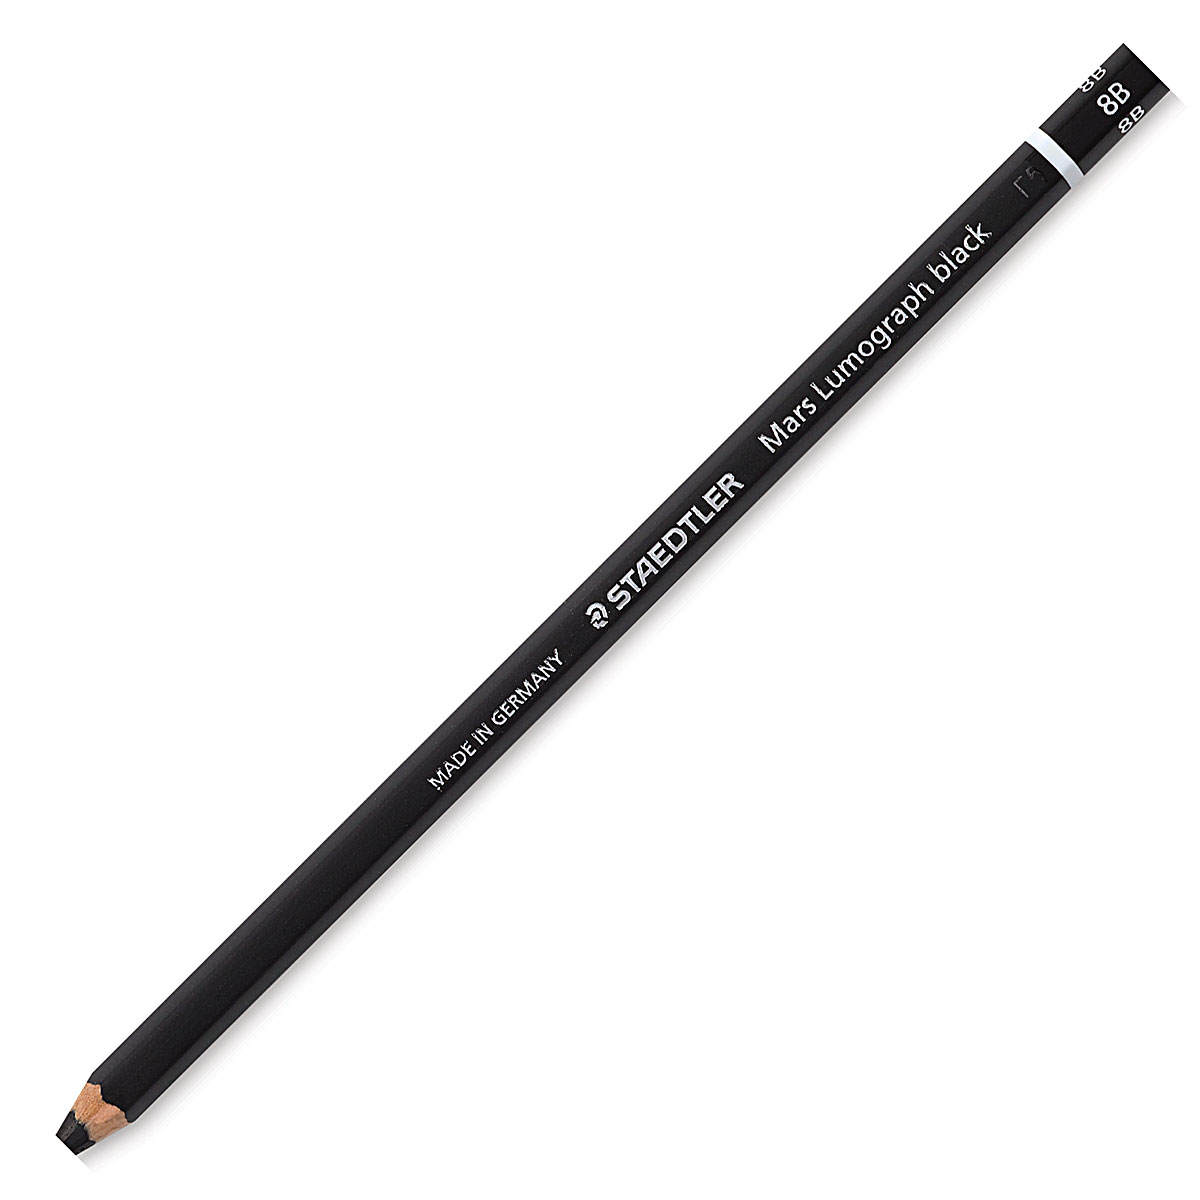 Staedtler Mars Lumograph Black, Carbon Blend Provides Jet Black Lines,  Professional Art Pencils, Tin of 6 Assorted Black Sketch Pencils, 100B G6